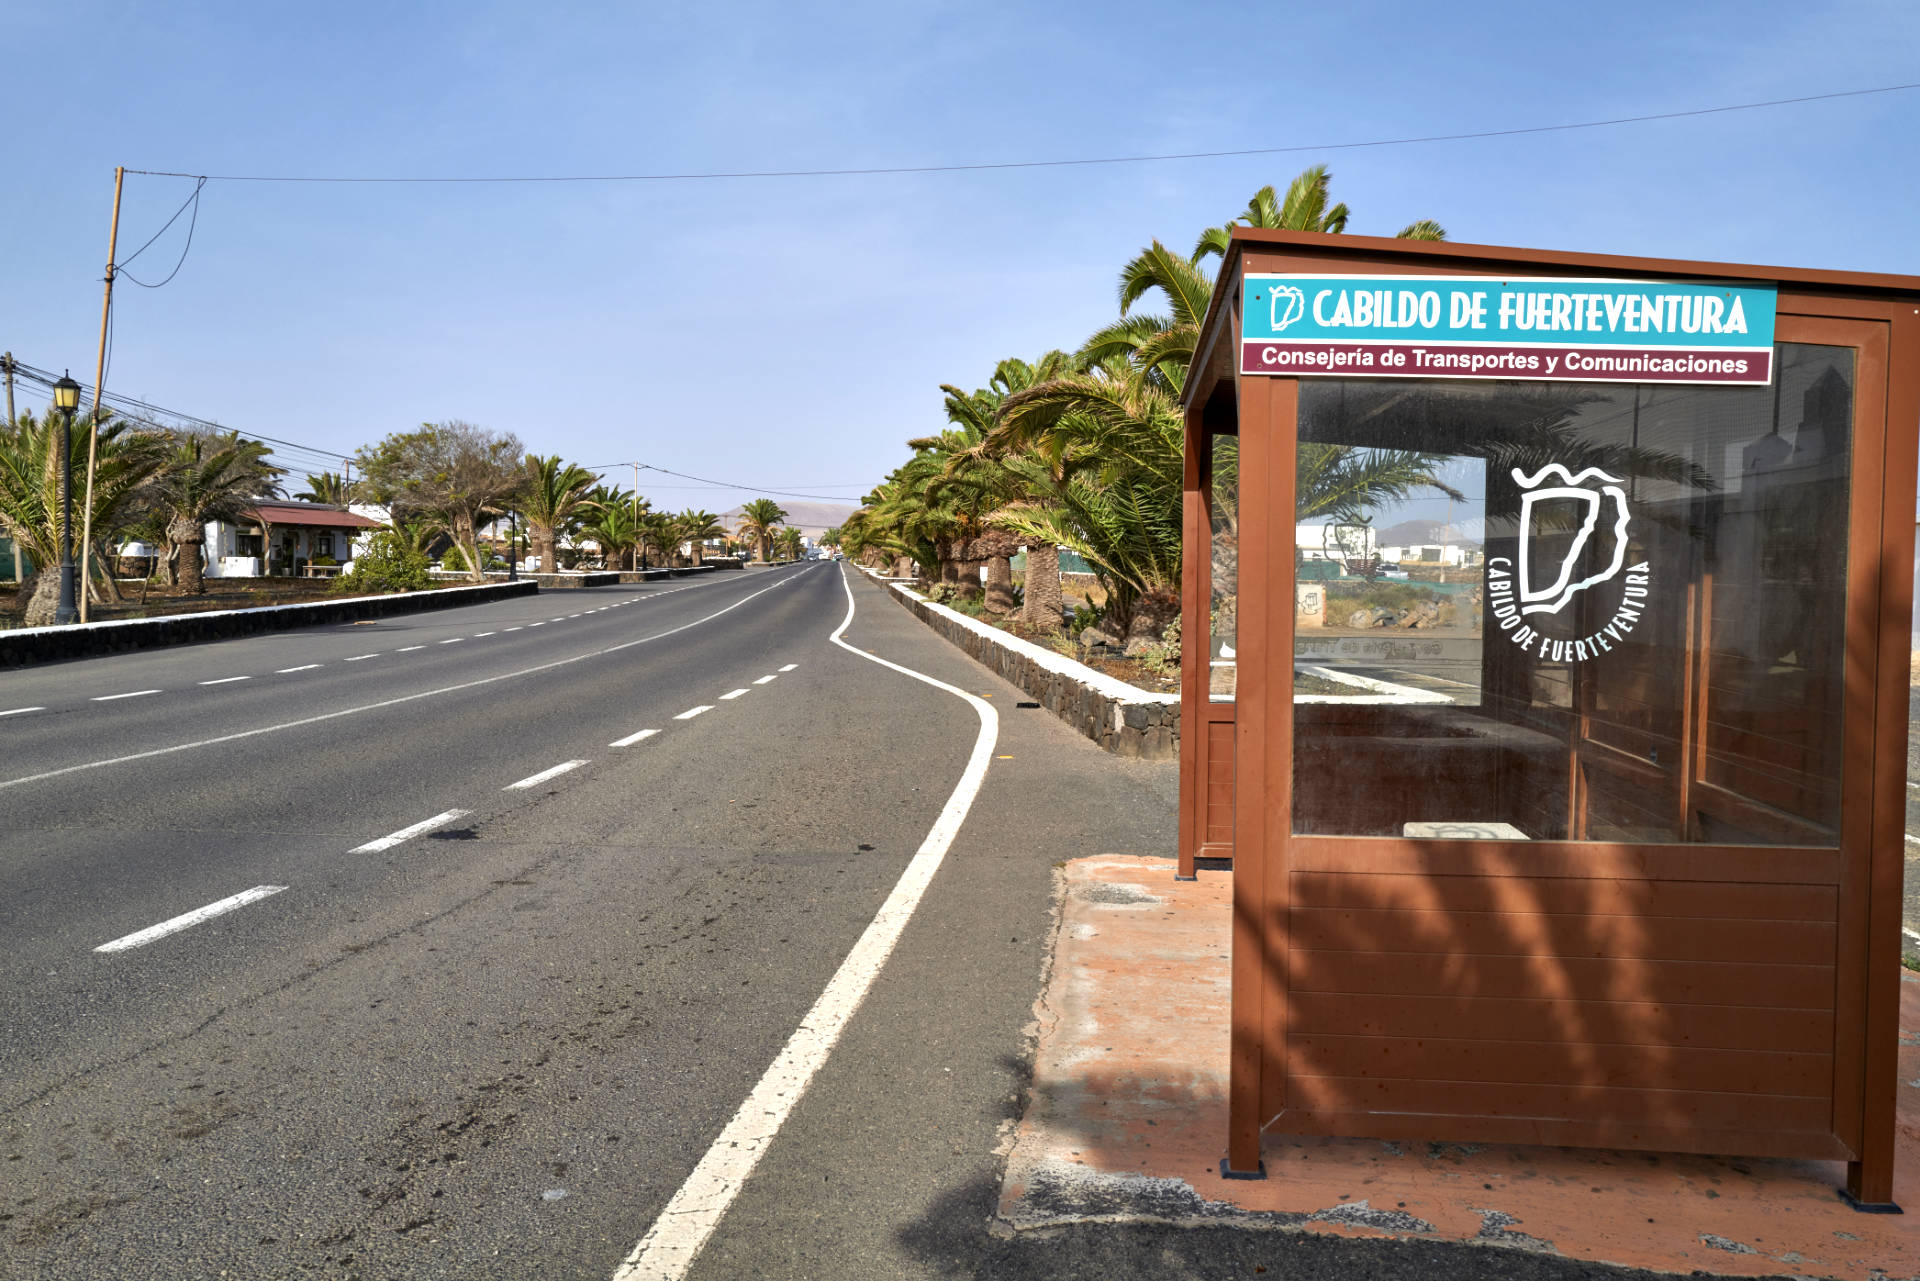 Parada – Busstation – in der Gemeinde La Oliva Fuerteventura.